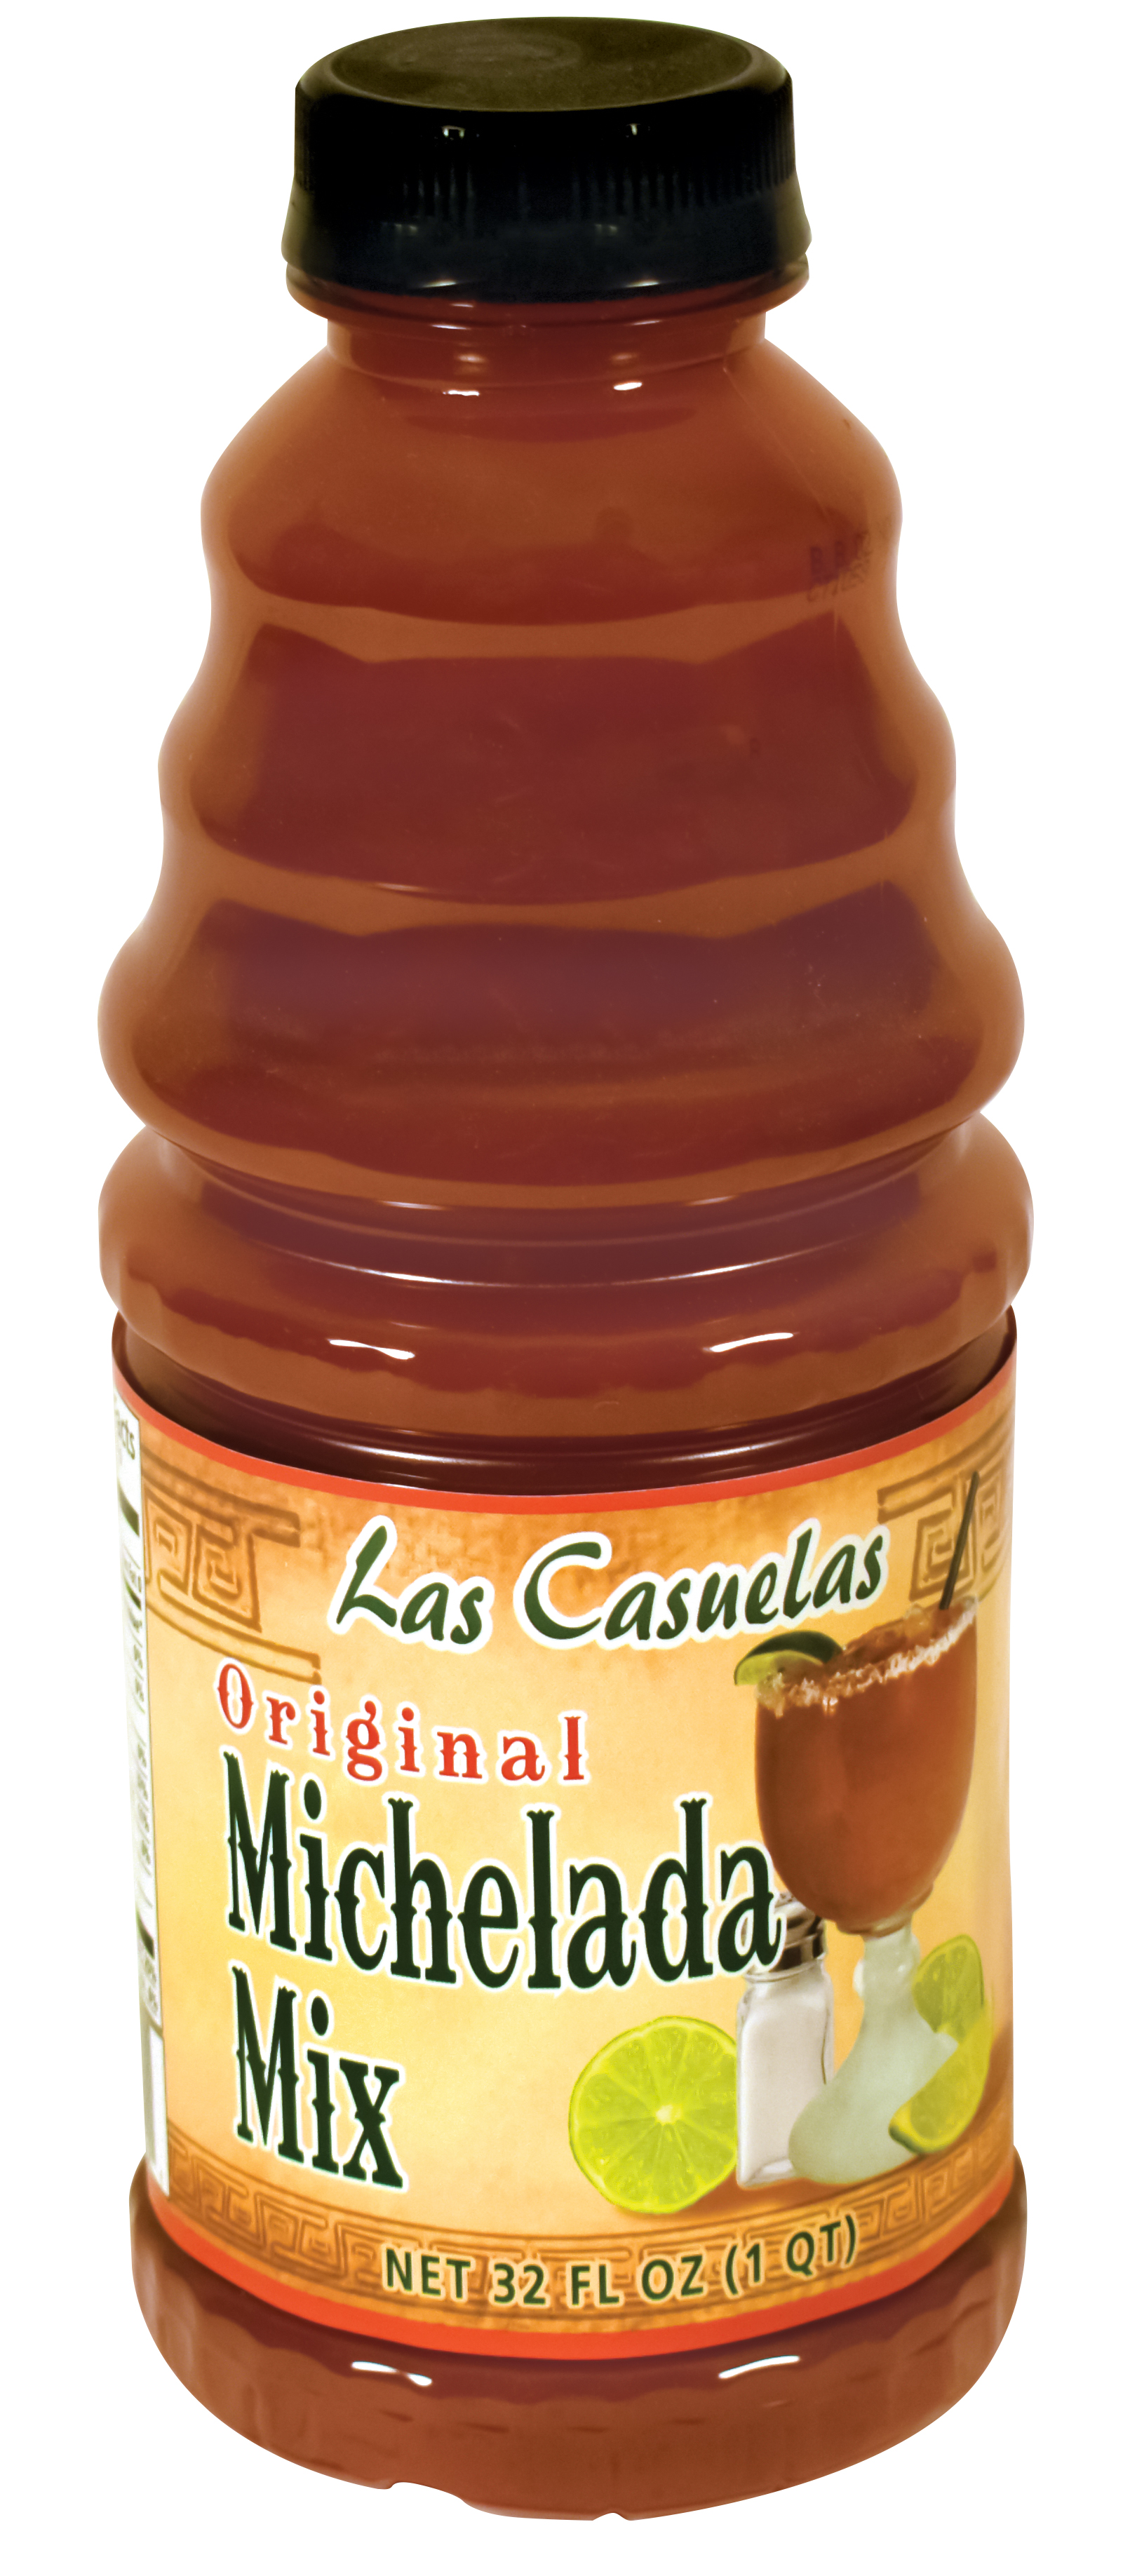 Las Casuelas Michelada Mix